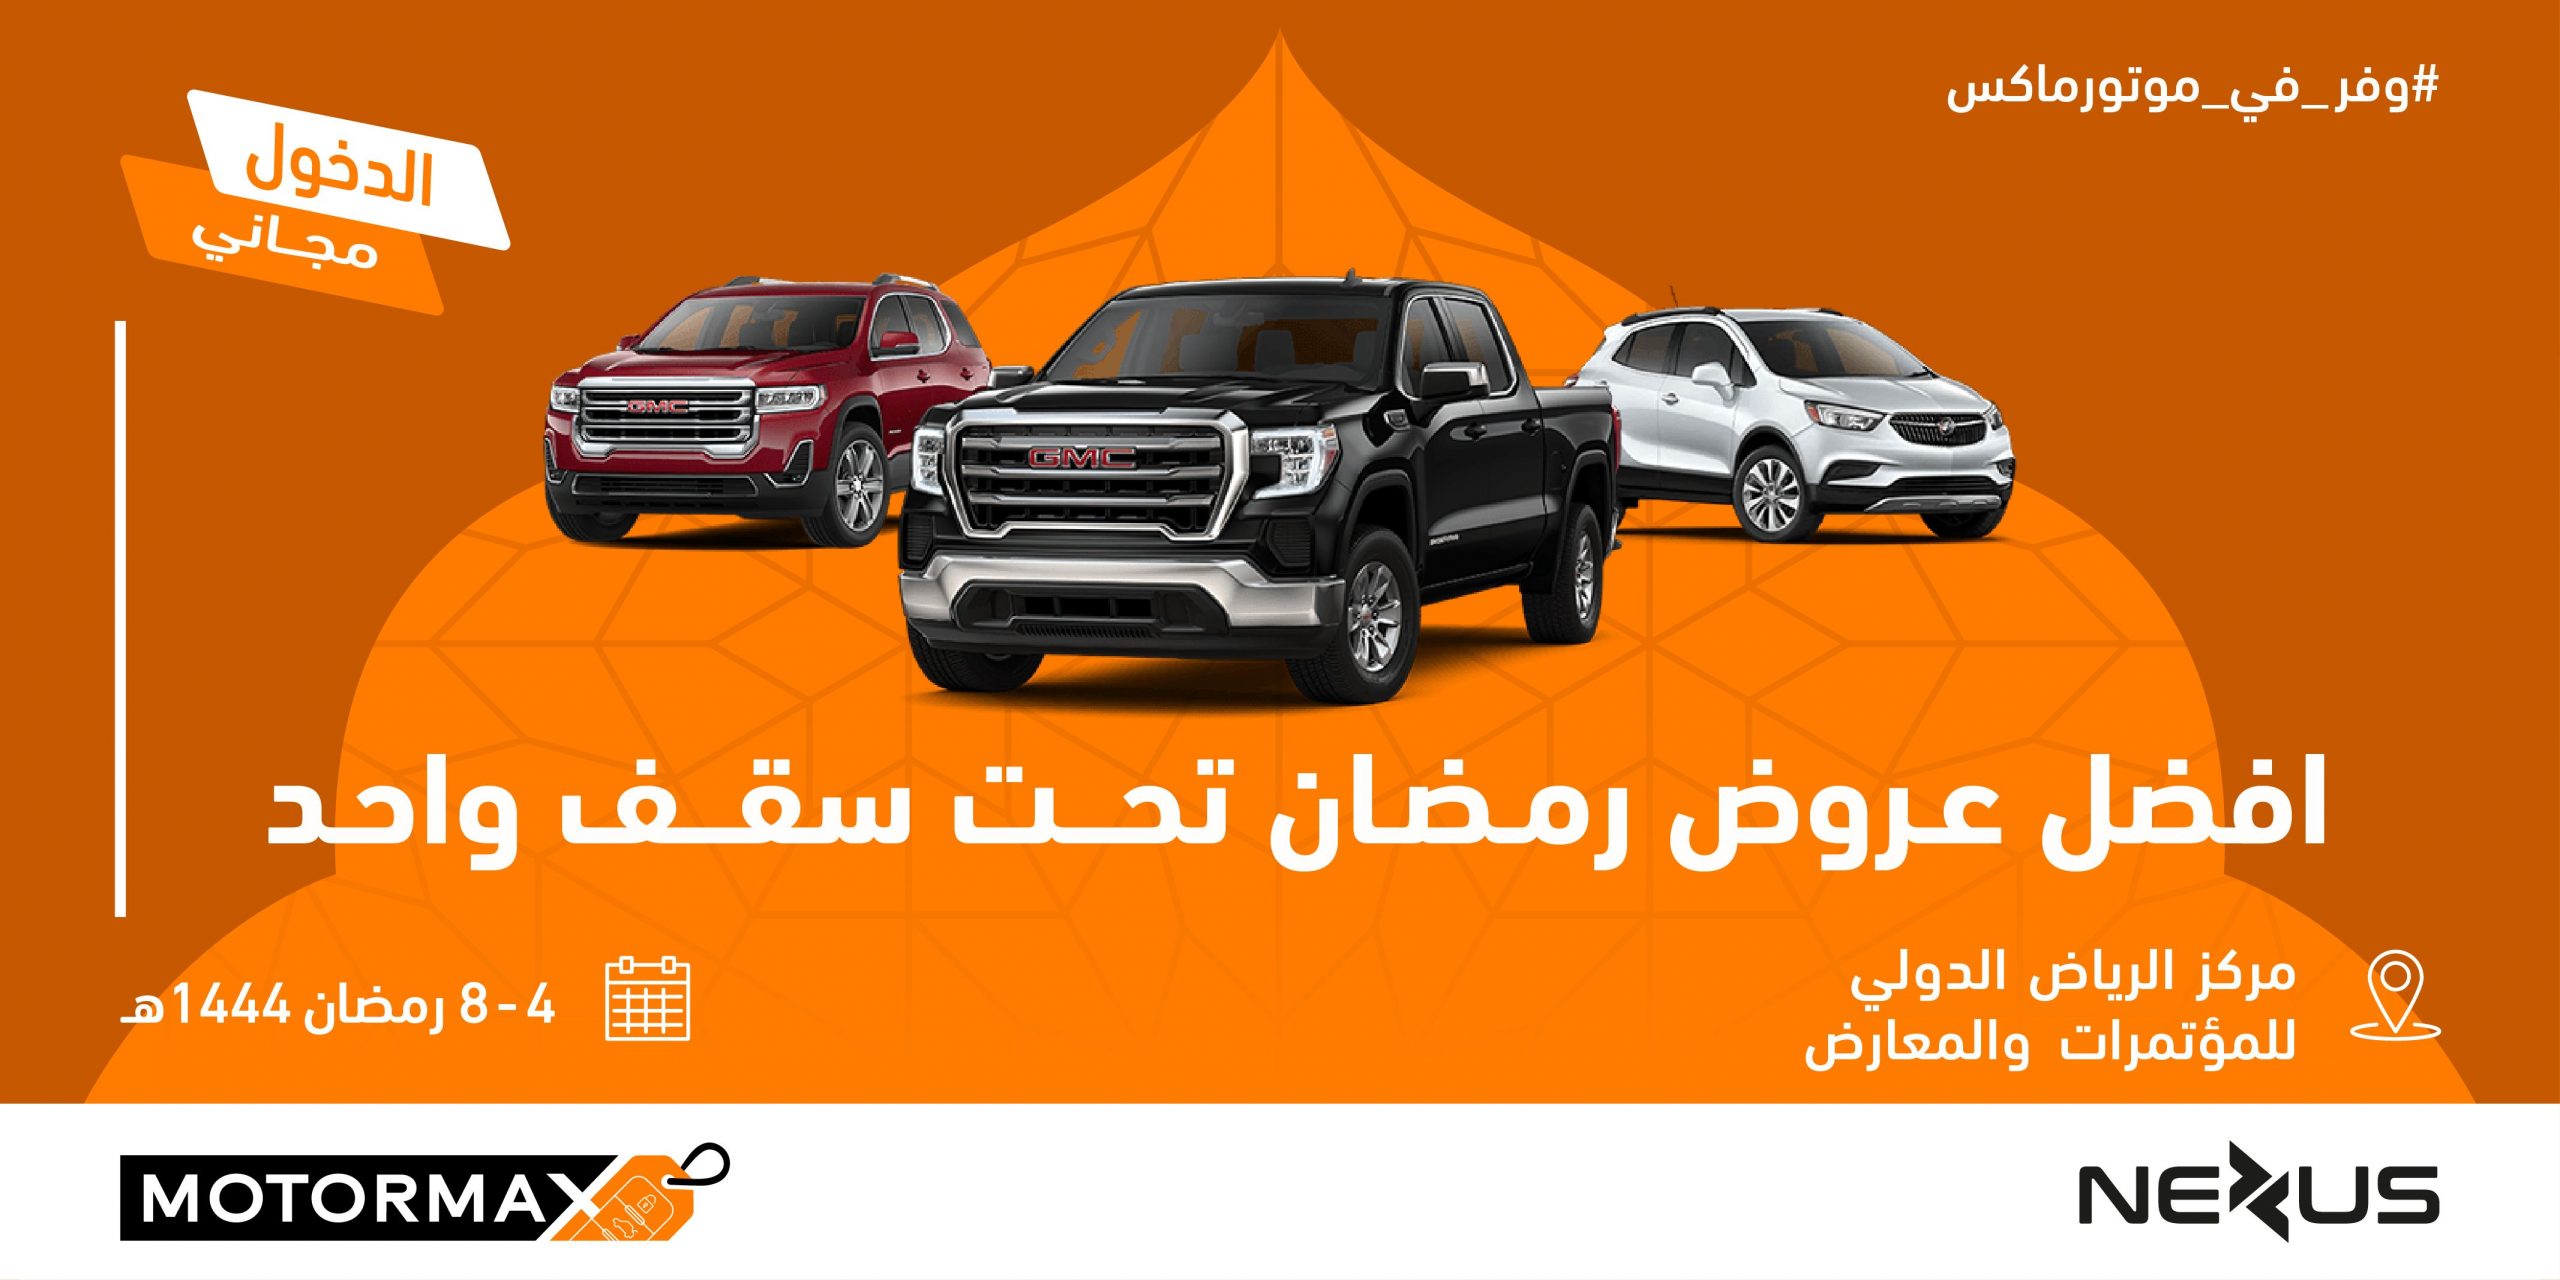 معرض رمضان الاستهلاكي للسيارات "موتورماكس" يستقبل زواره خلال شهر رمضان المبارك في مركز الرياض الدولي للمؤتمرات والمعارض 15